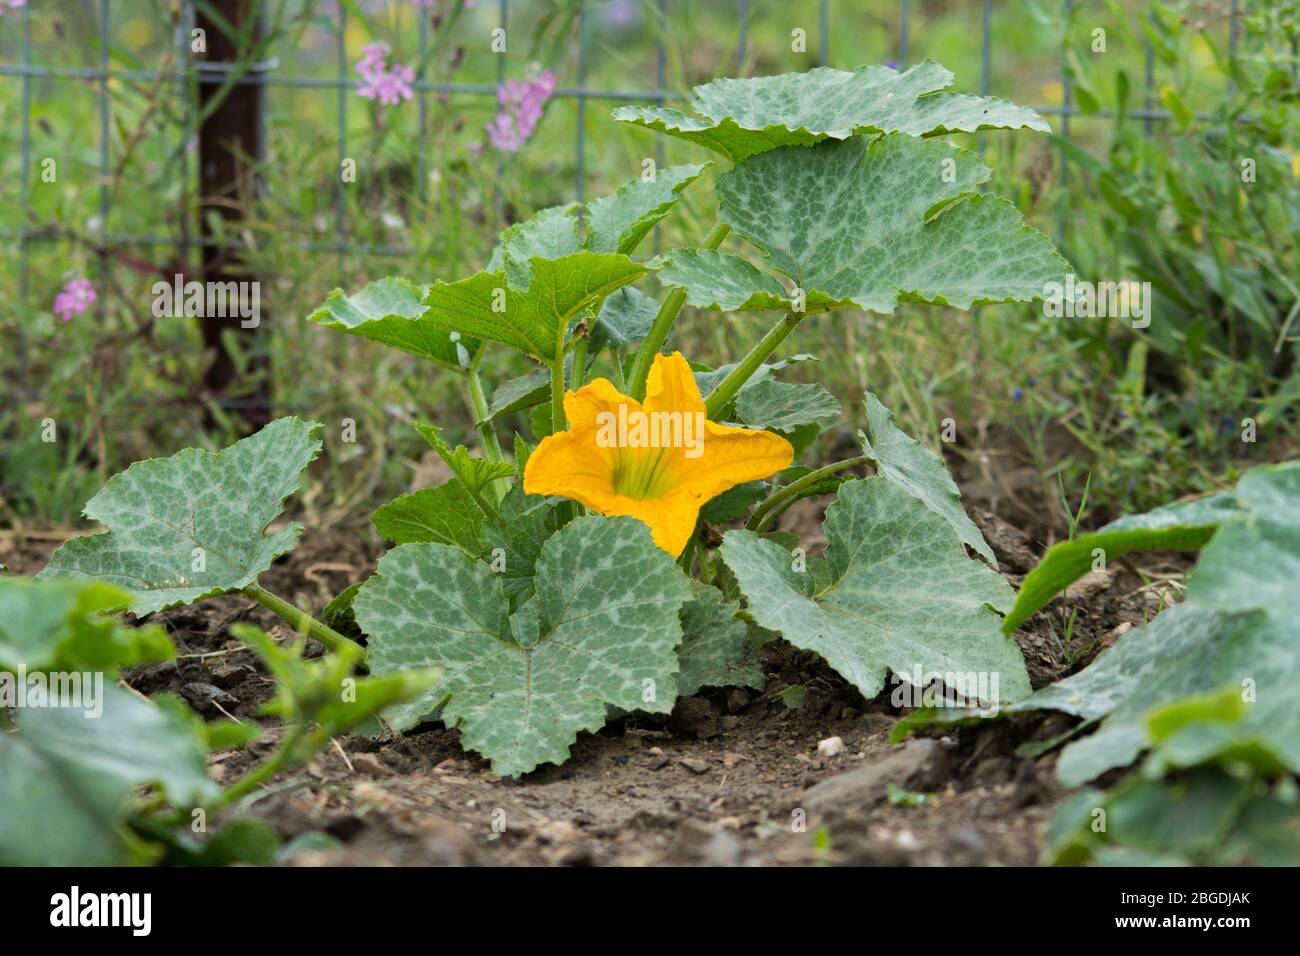 Fiore giallo di una pianta di zucchine o zucchine, Cucurbita pepo, un orto a cubetti in un giardino urbano. Foto Stock